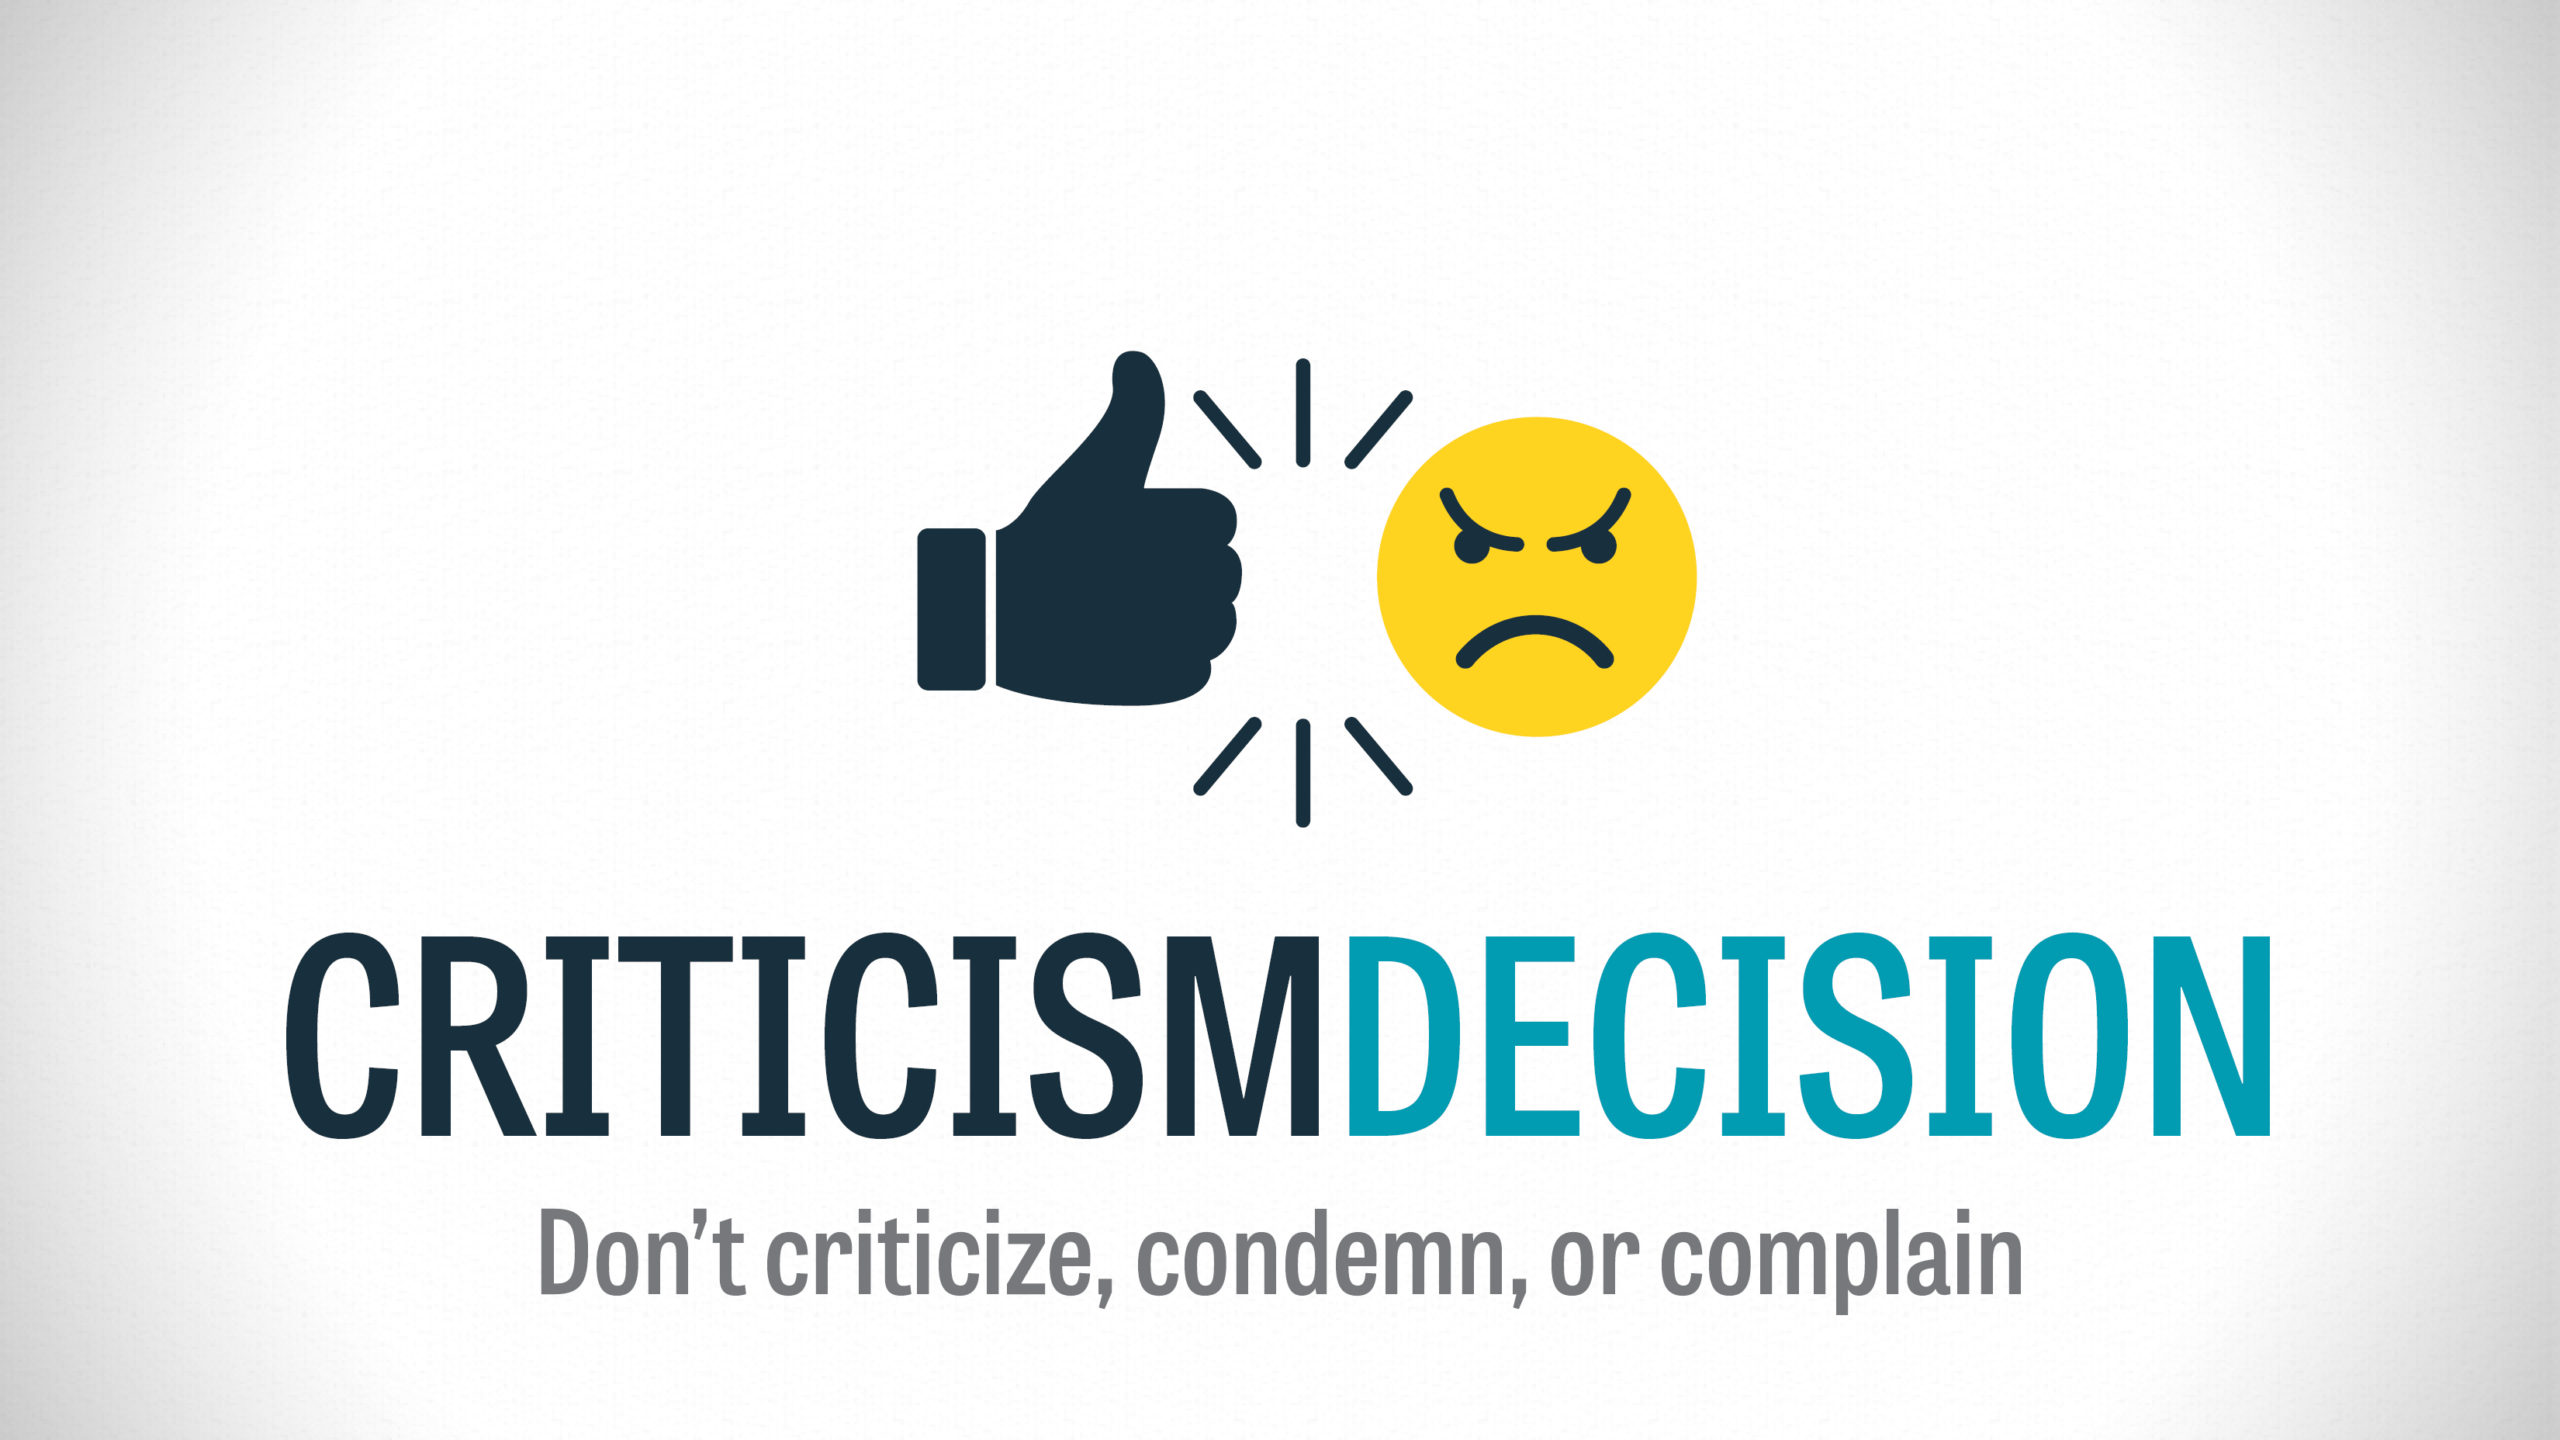 Criticism Decision – Part 4